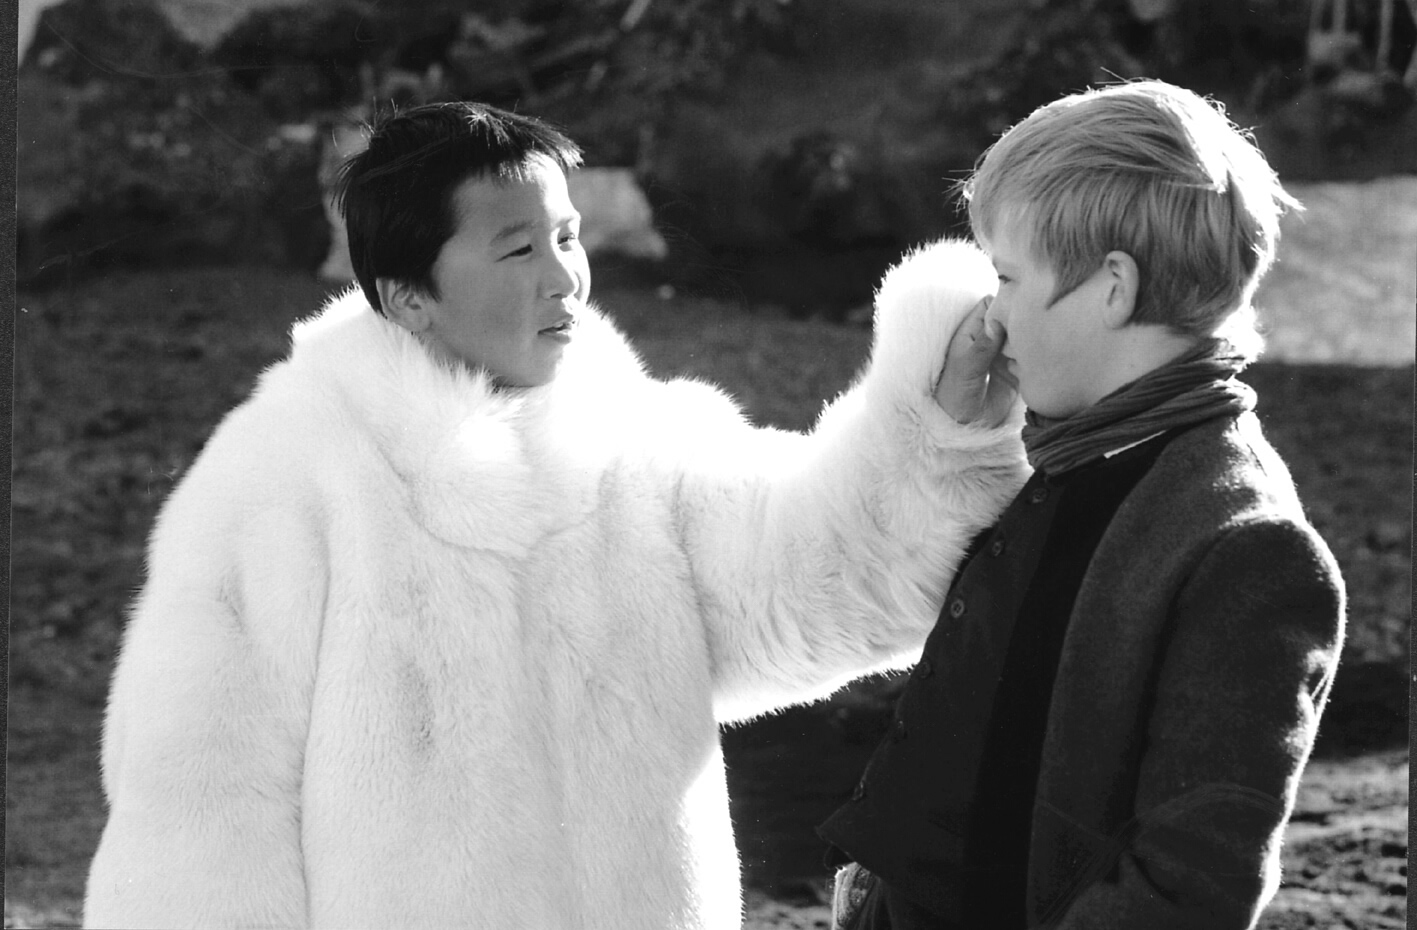 Eine schwarz-weiß Fotografie auf der in Junge in einem weißen Pelzmantel und ein Junge in einem dunklen schicken Mantel sich gegenüber stehen. Der Junge im Pelzmantel kneift den anderen Jungen in die Nase.